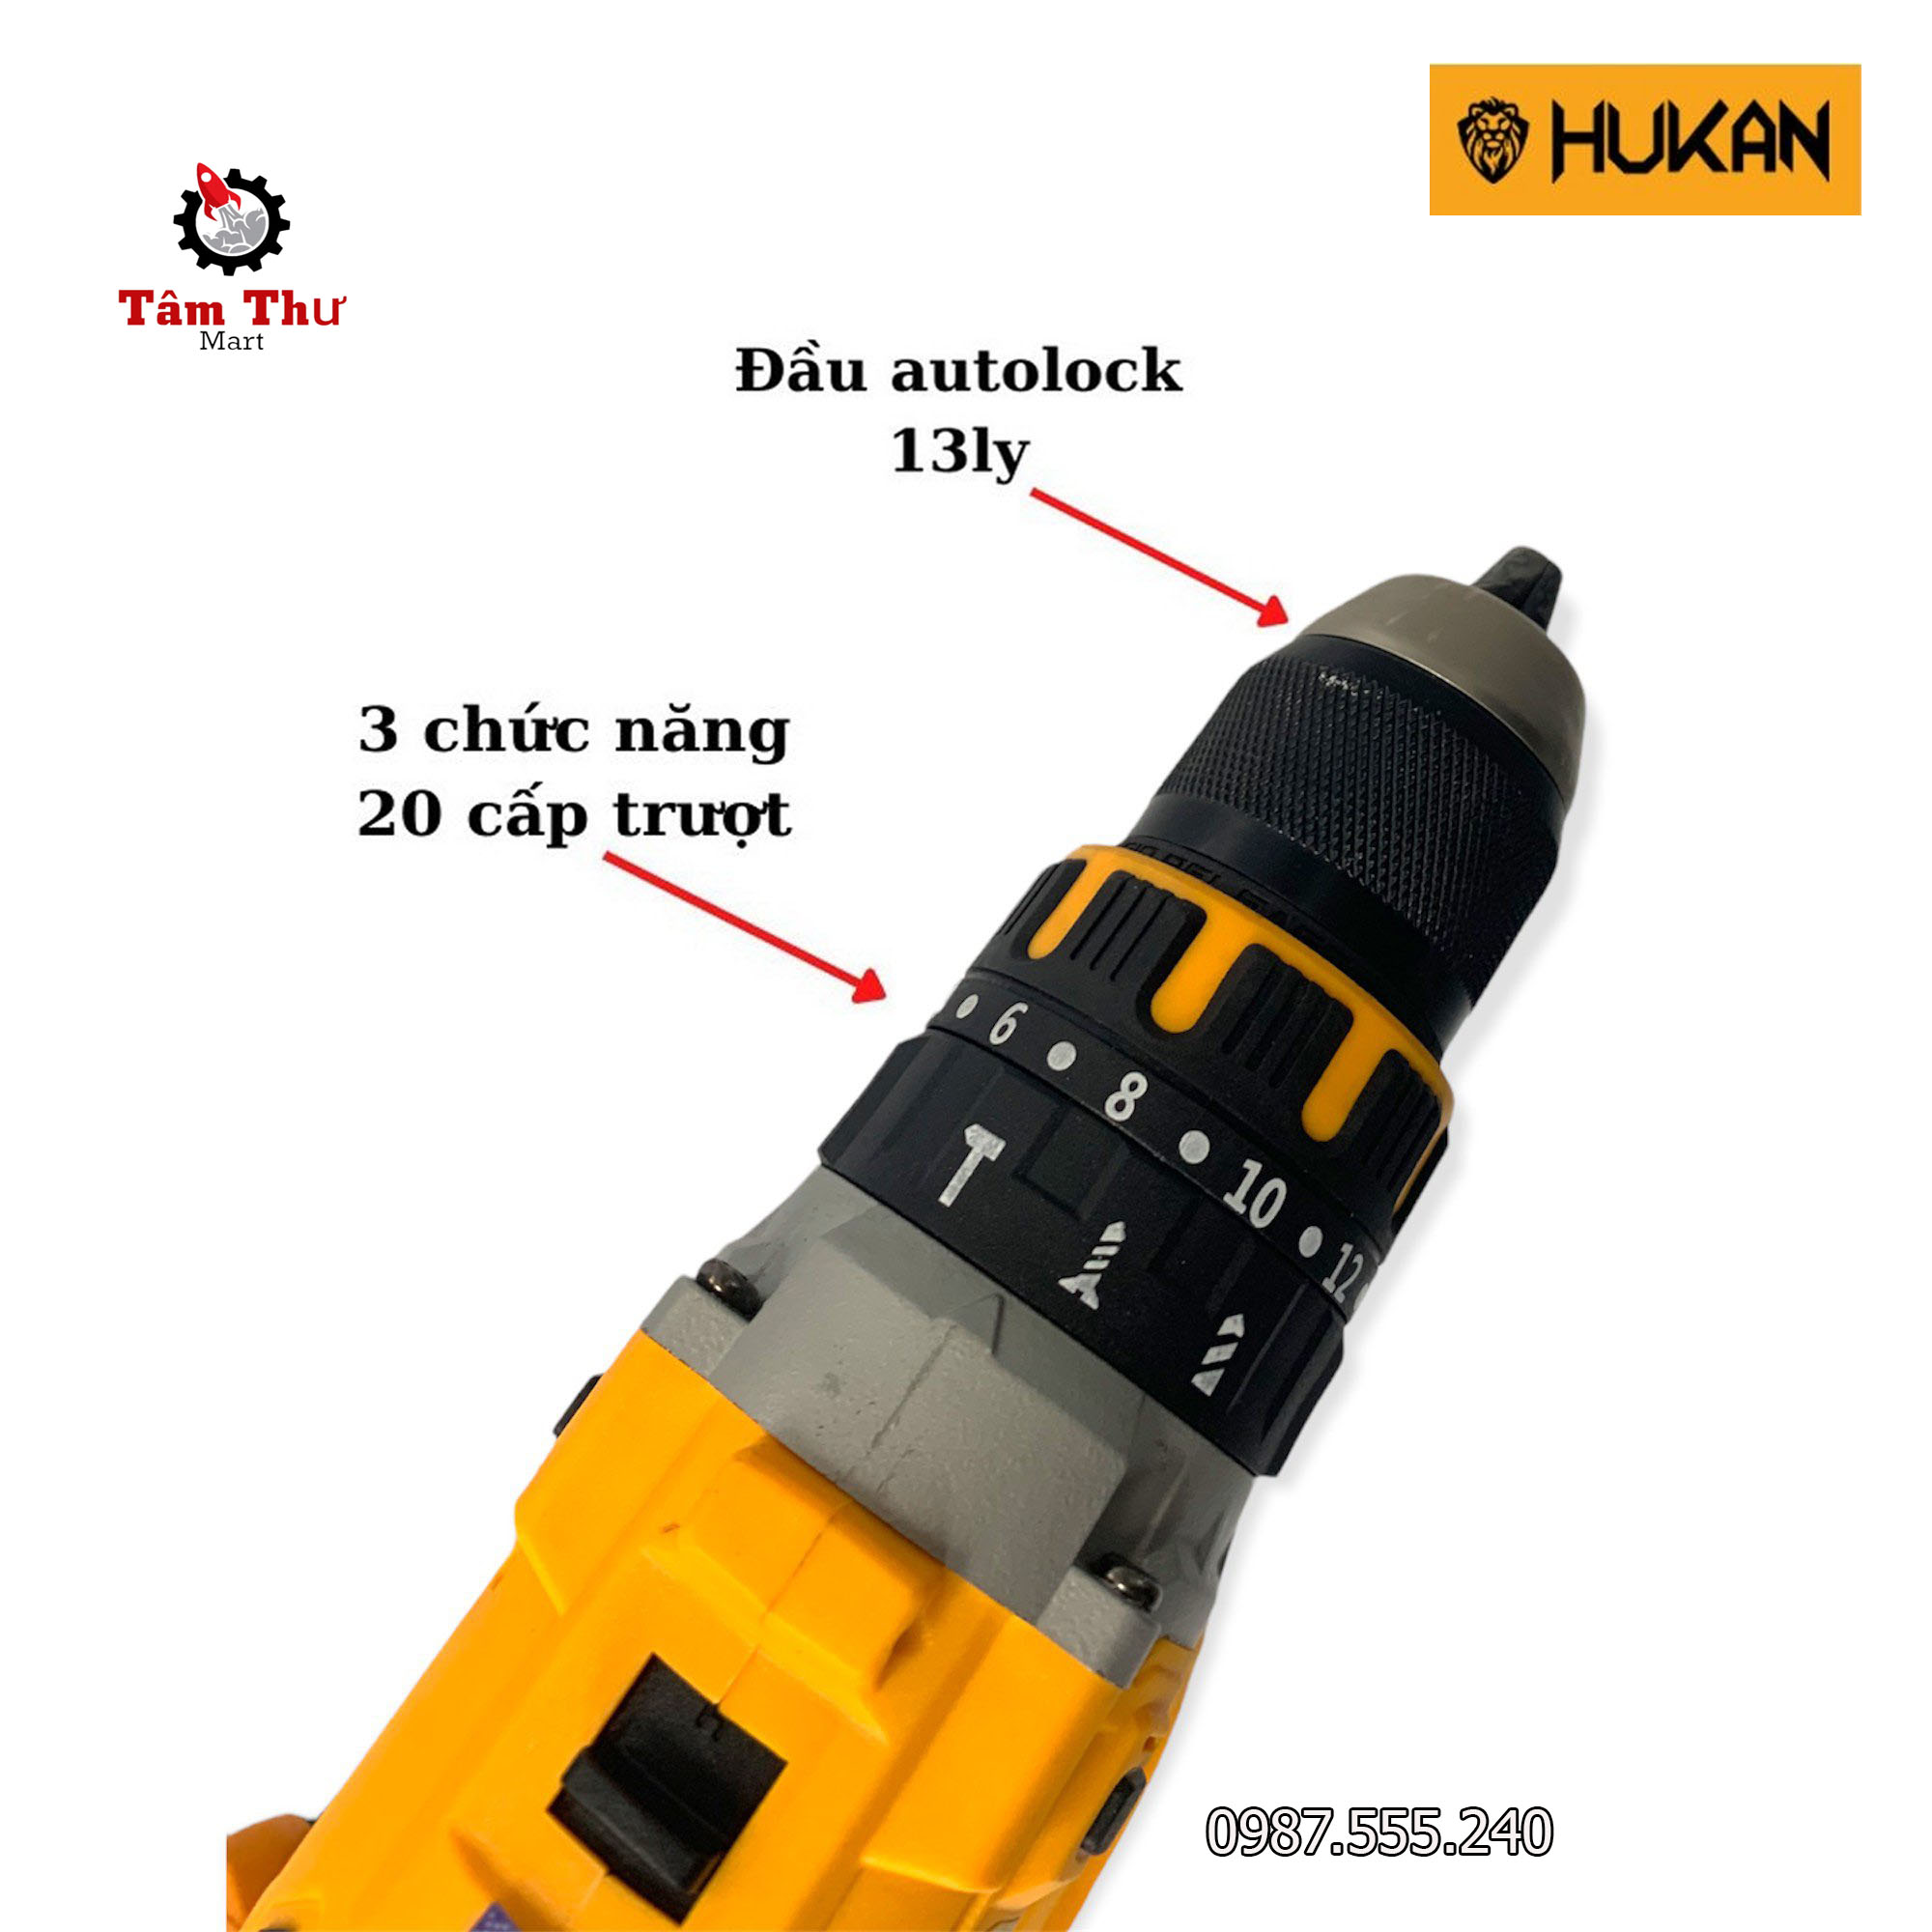 Máy khoan pin HUKAN X8 Pro không chổi than đầu kẹp 13 ly tặng túi